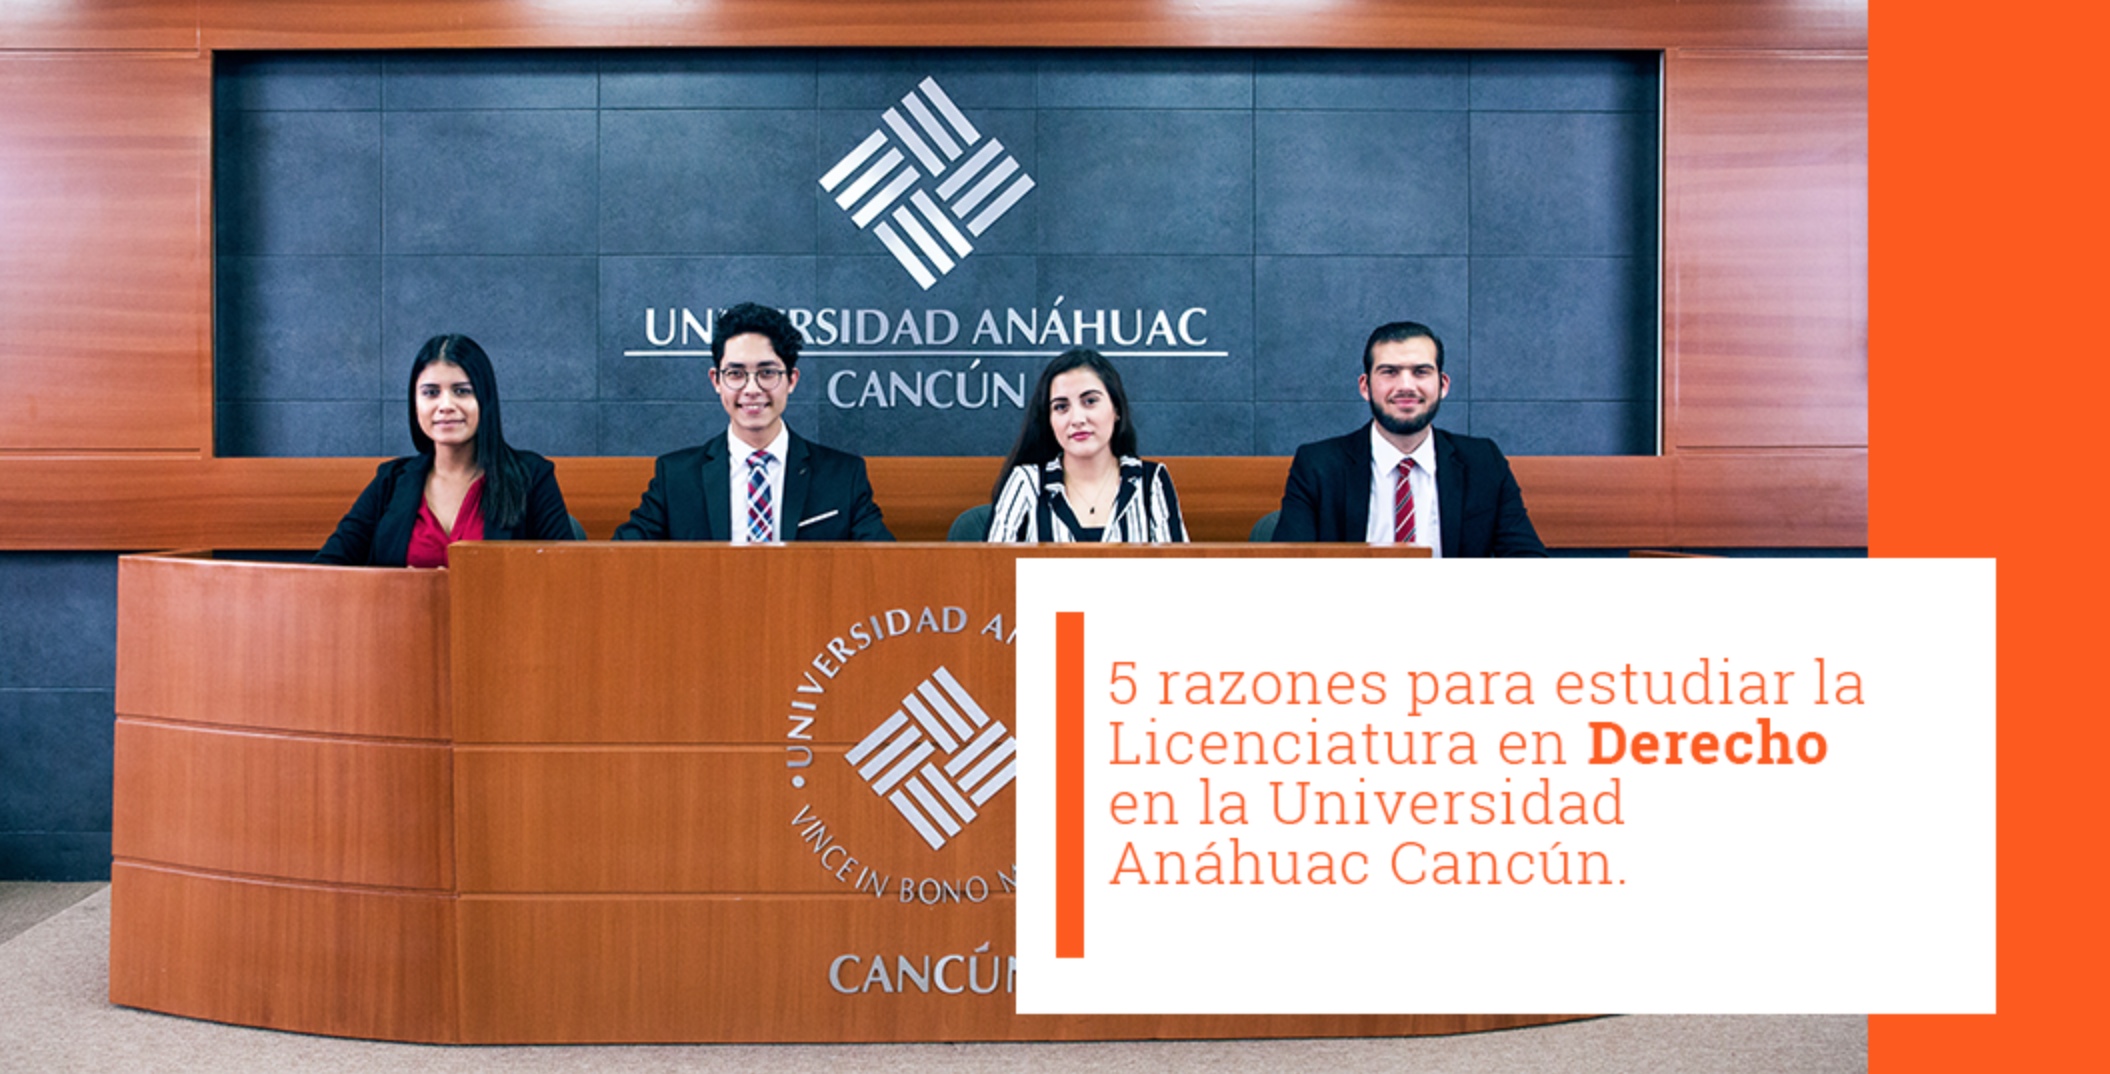 5 Razones para estudiar la Licenciatura en Derecho en la Universidad Anáhuac Cancún